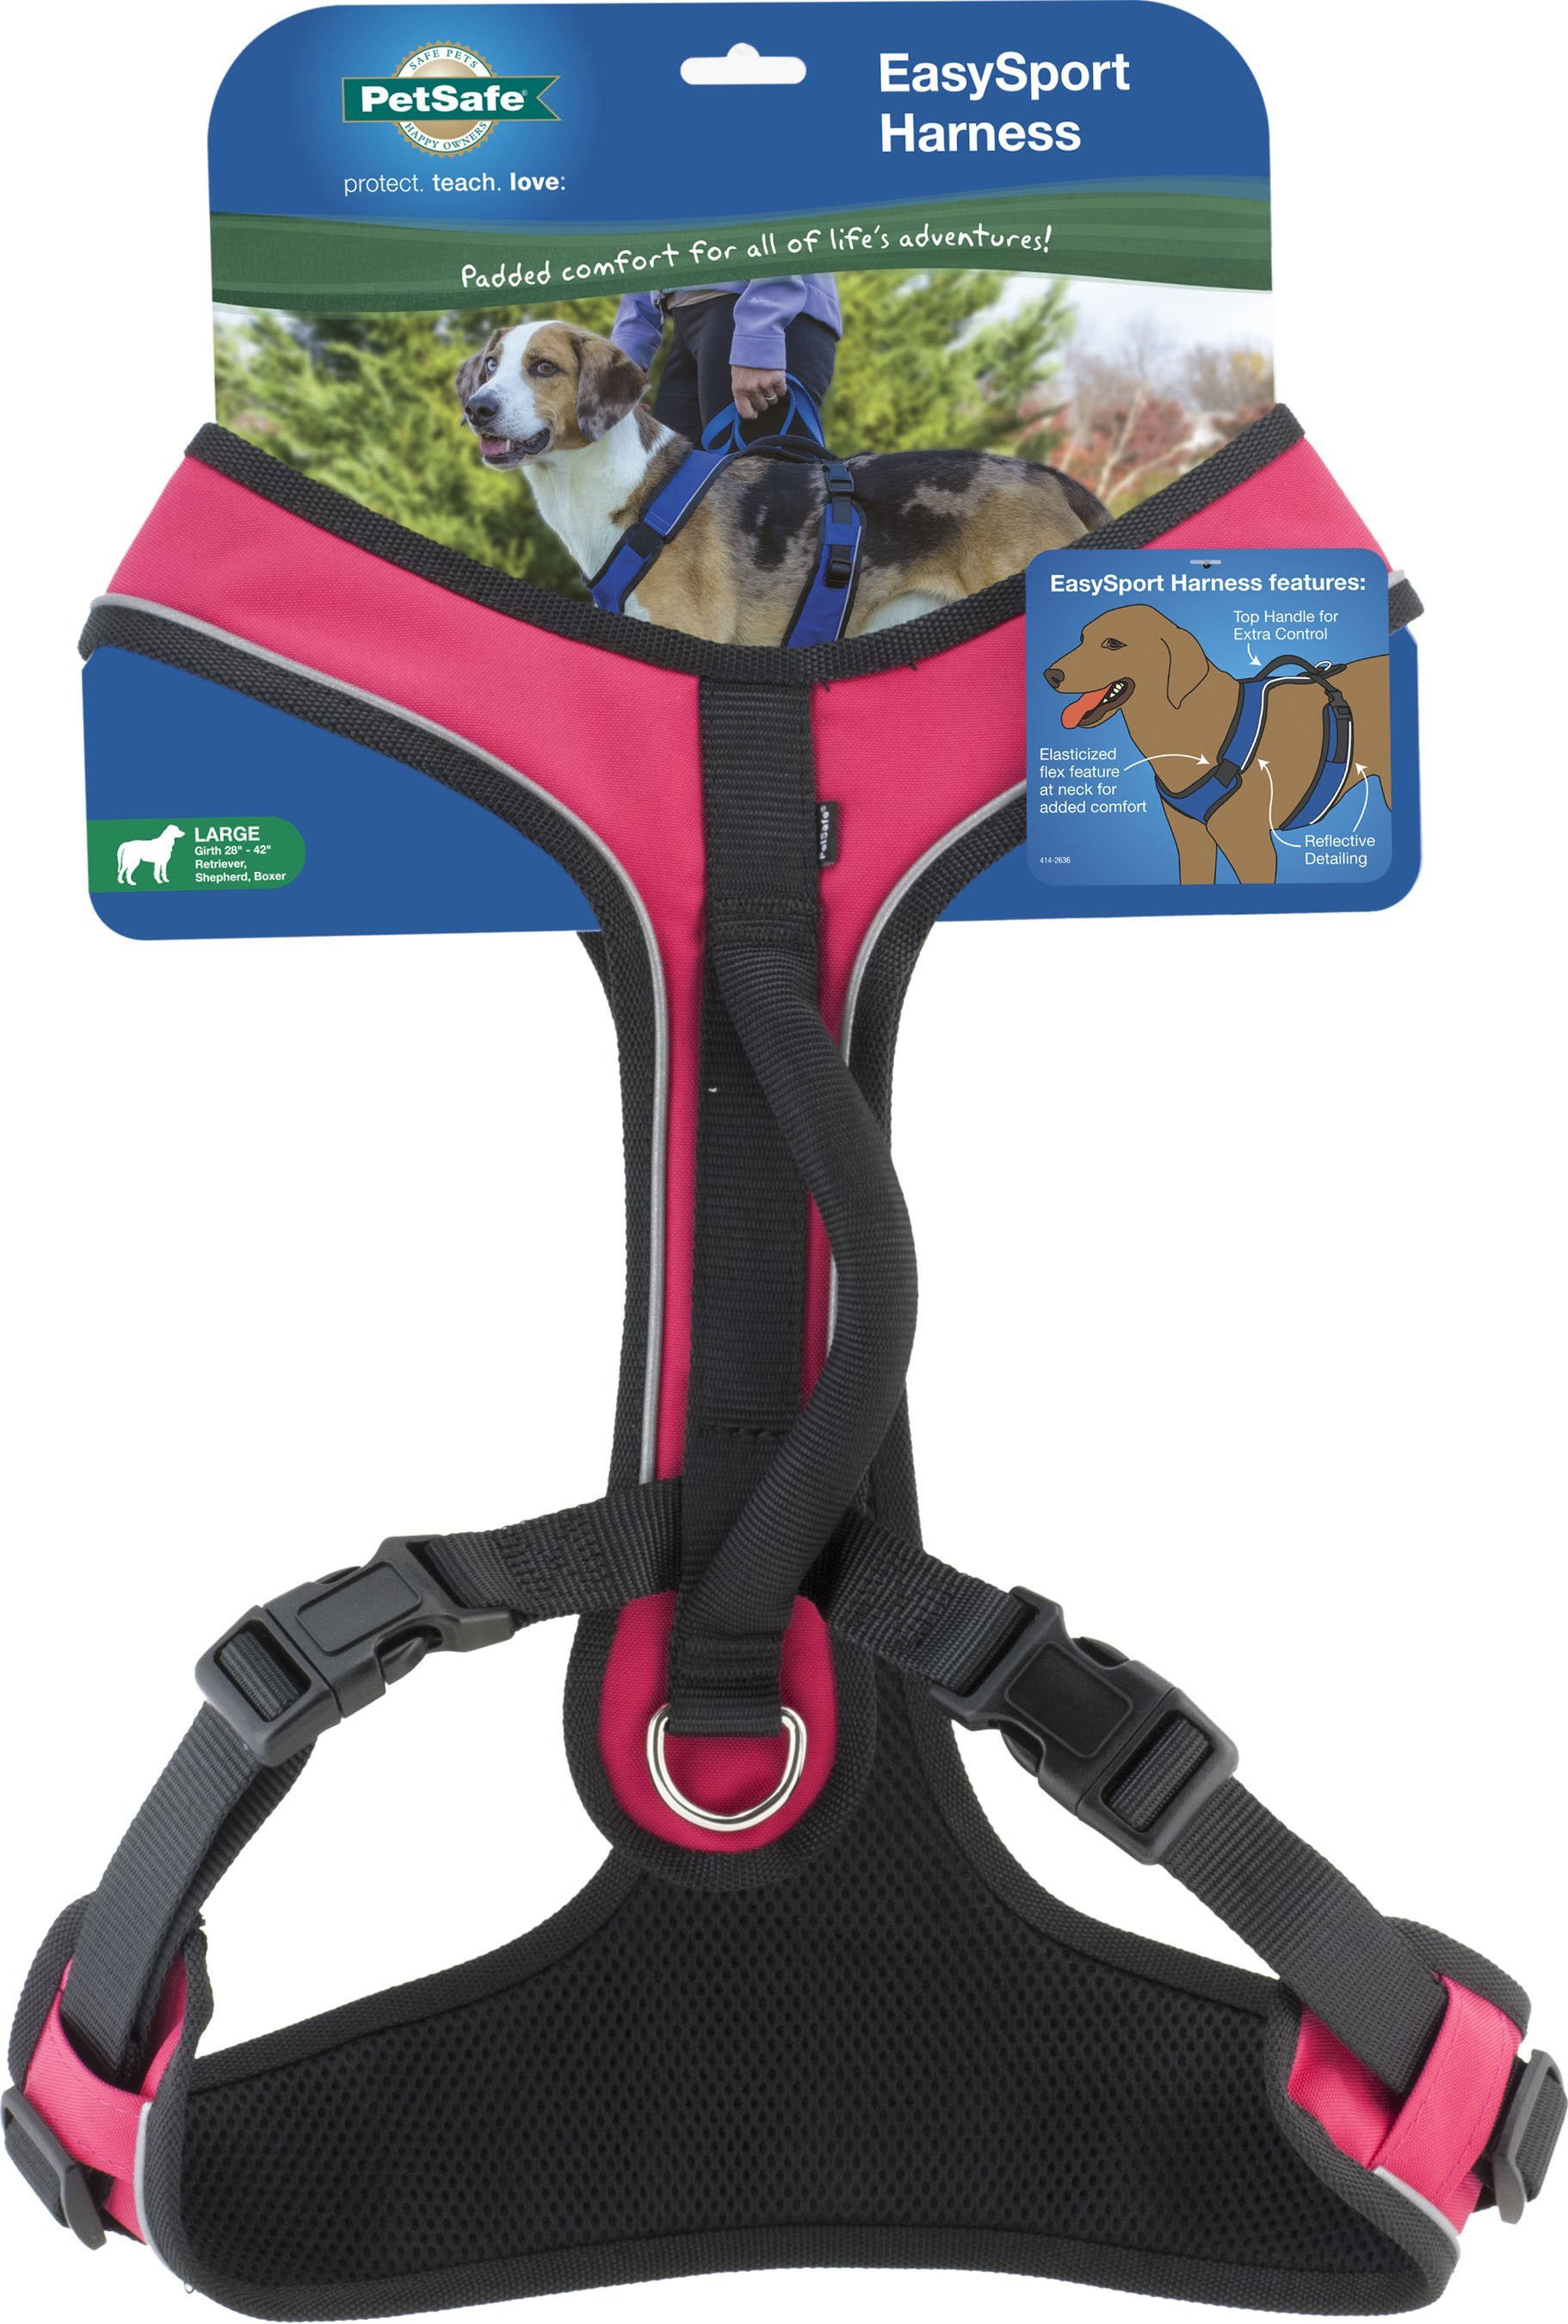 PetSafe EasySport Harness - Pink, Large